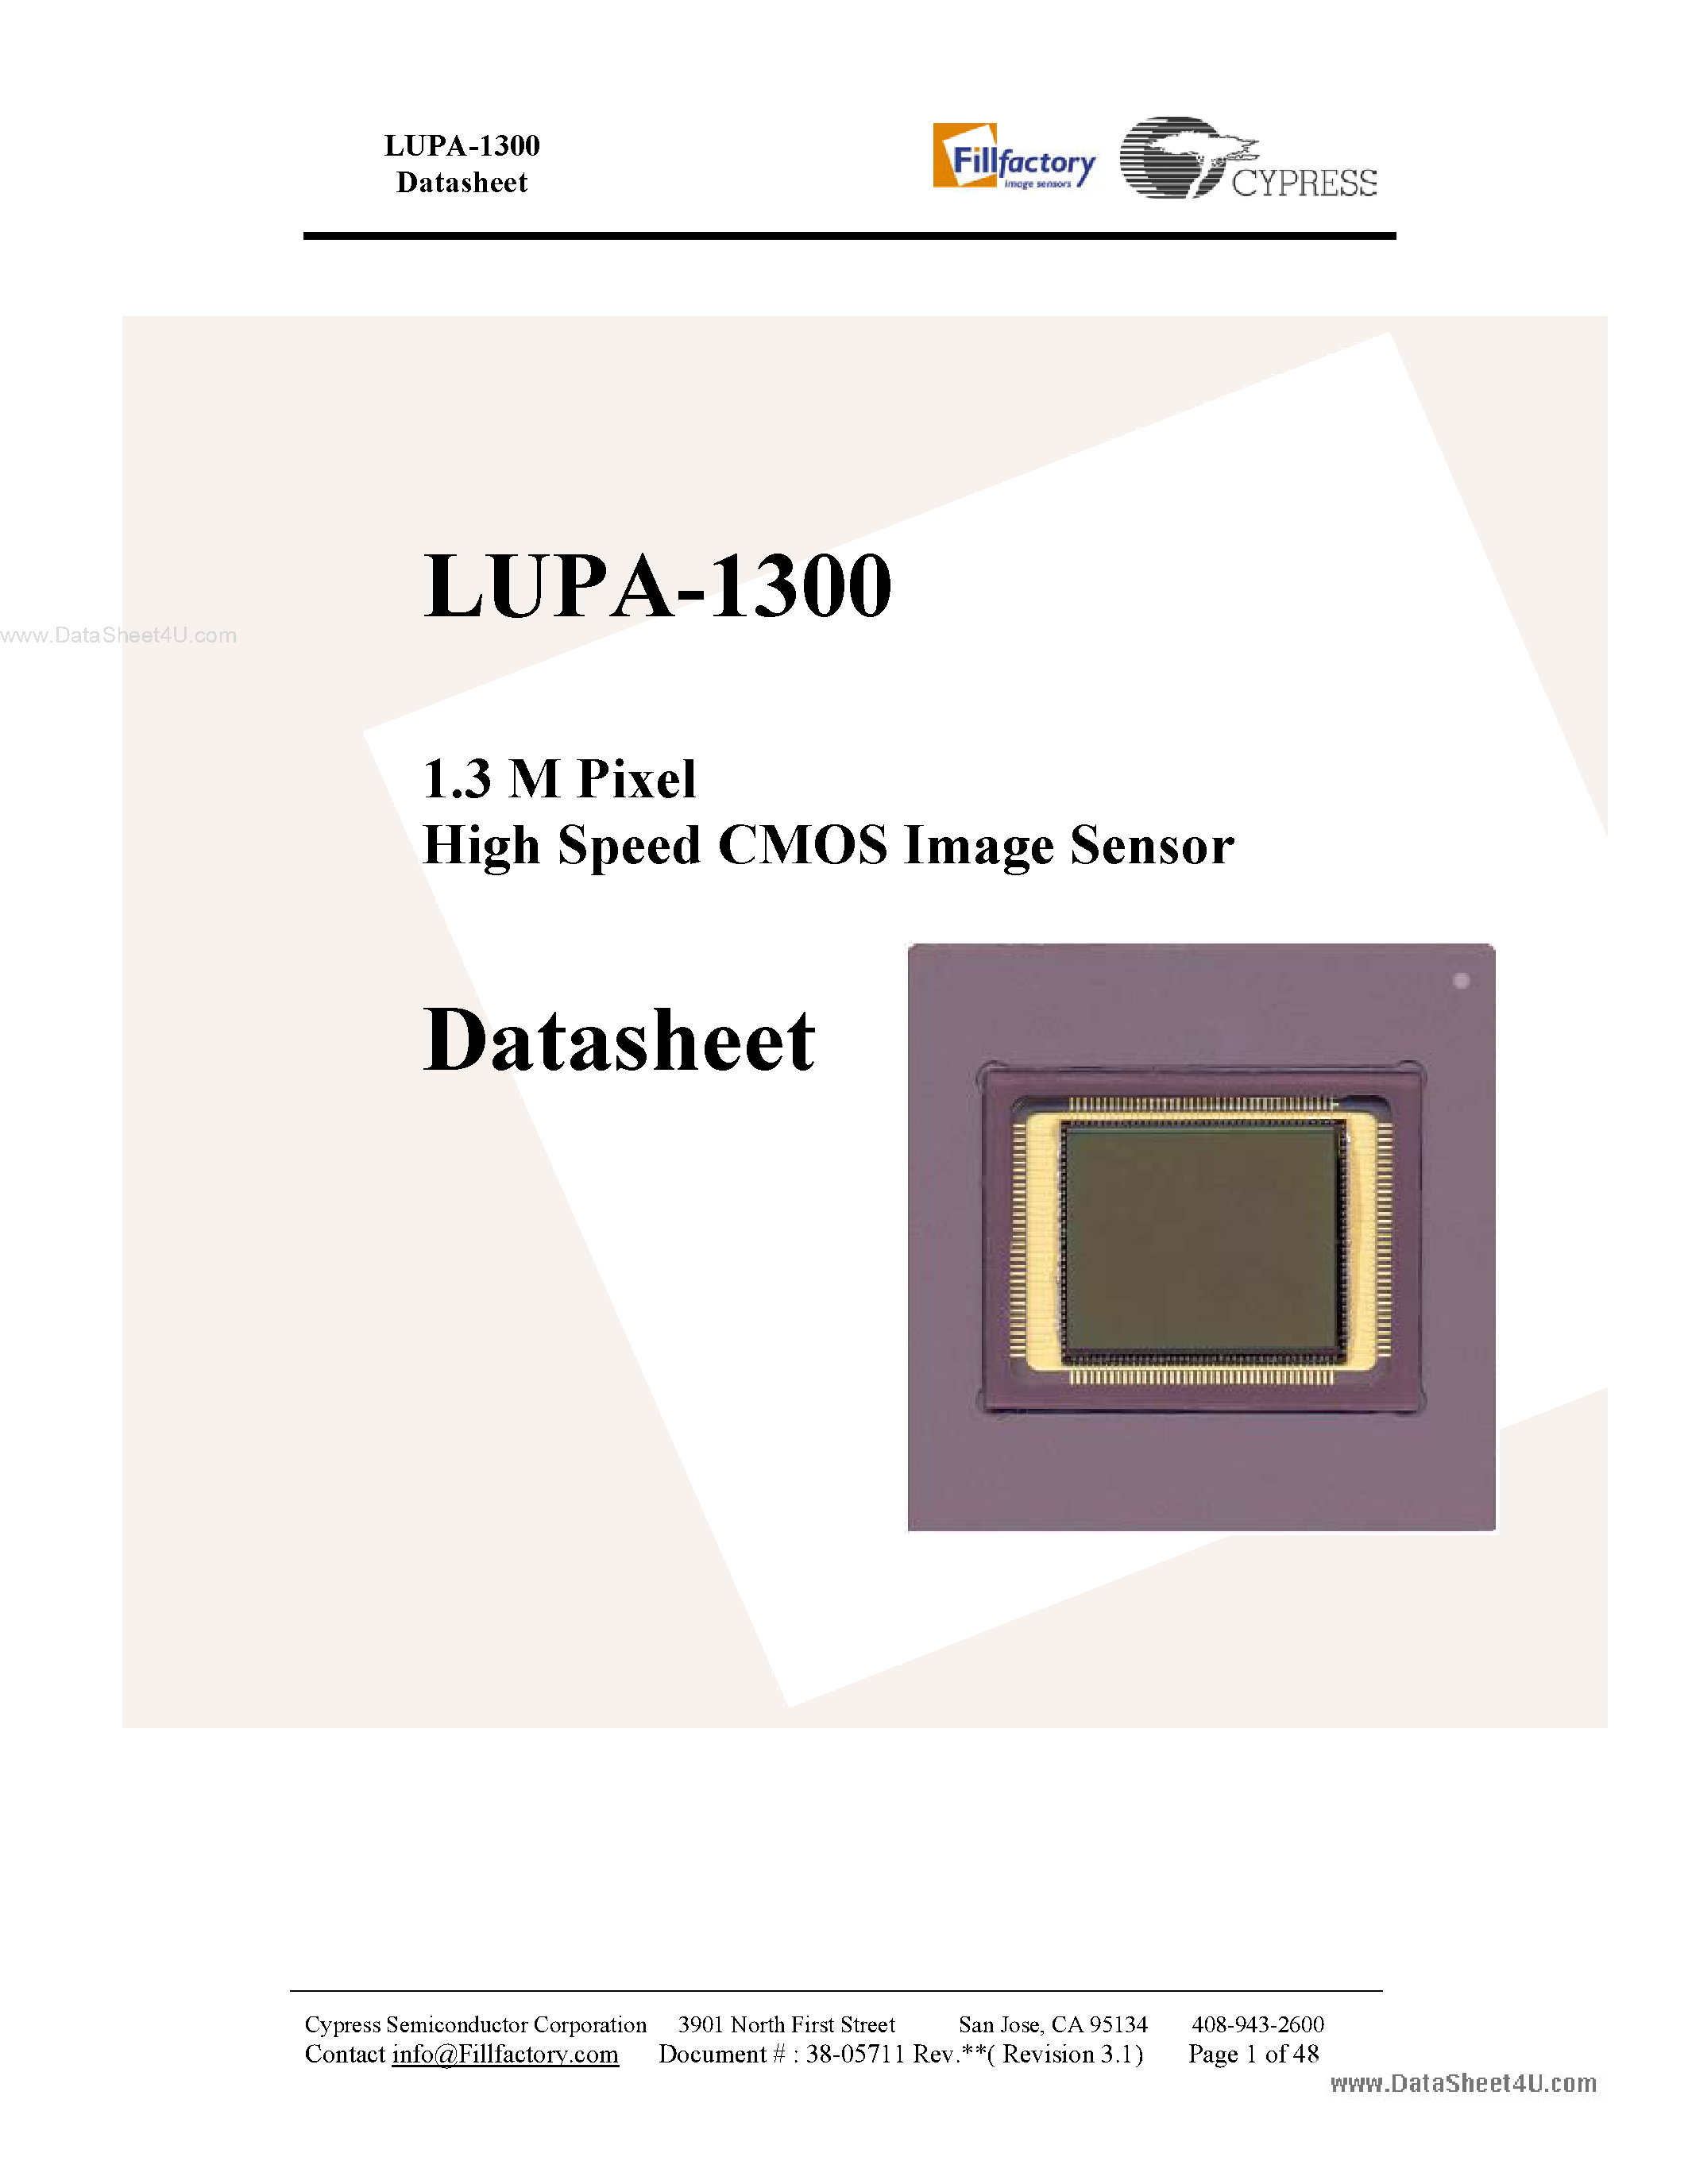 Datasheet LUPA-1300 - 1.3 M Pixel High Speed CMOS Image Sensor page 1